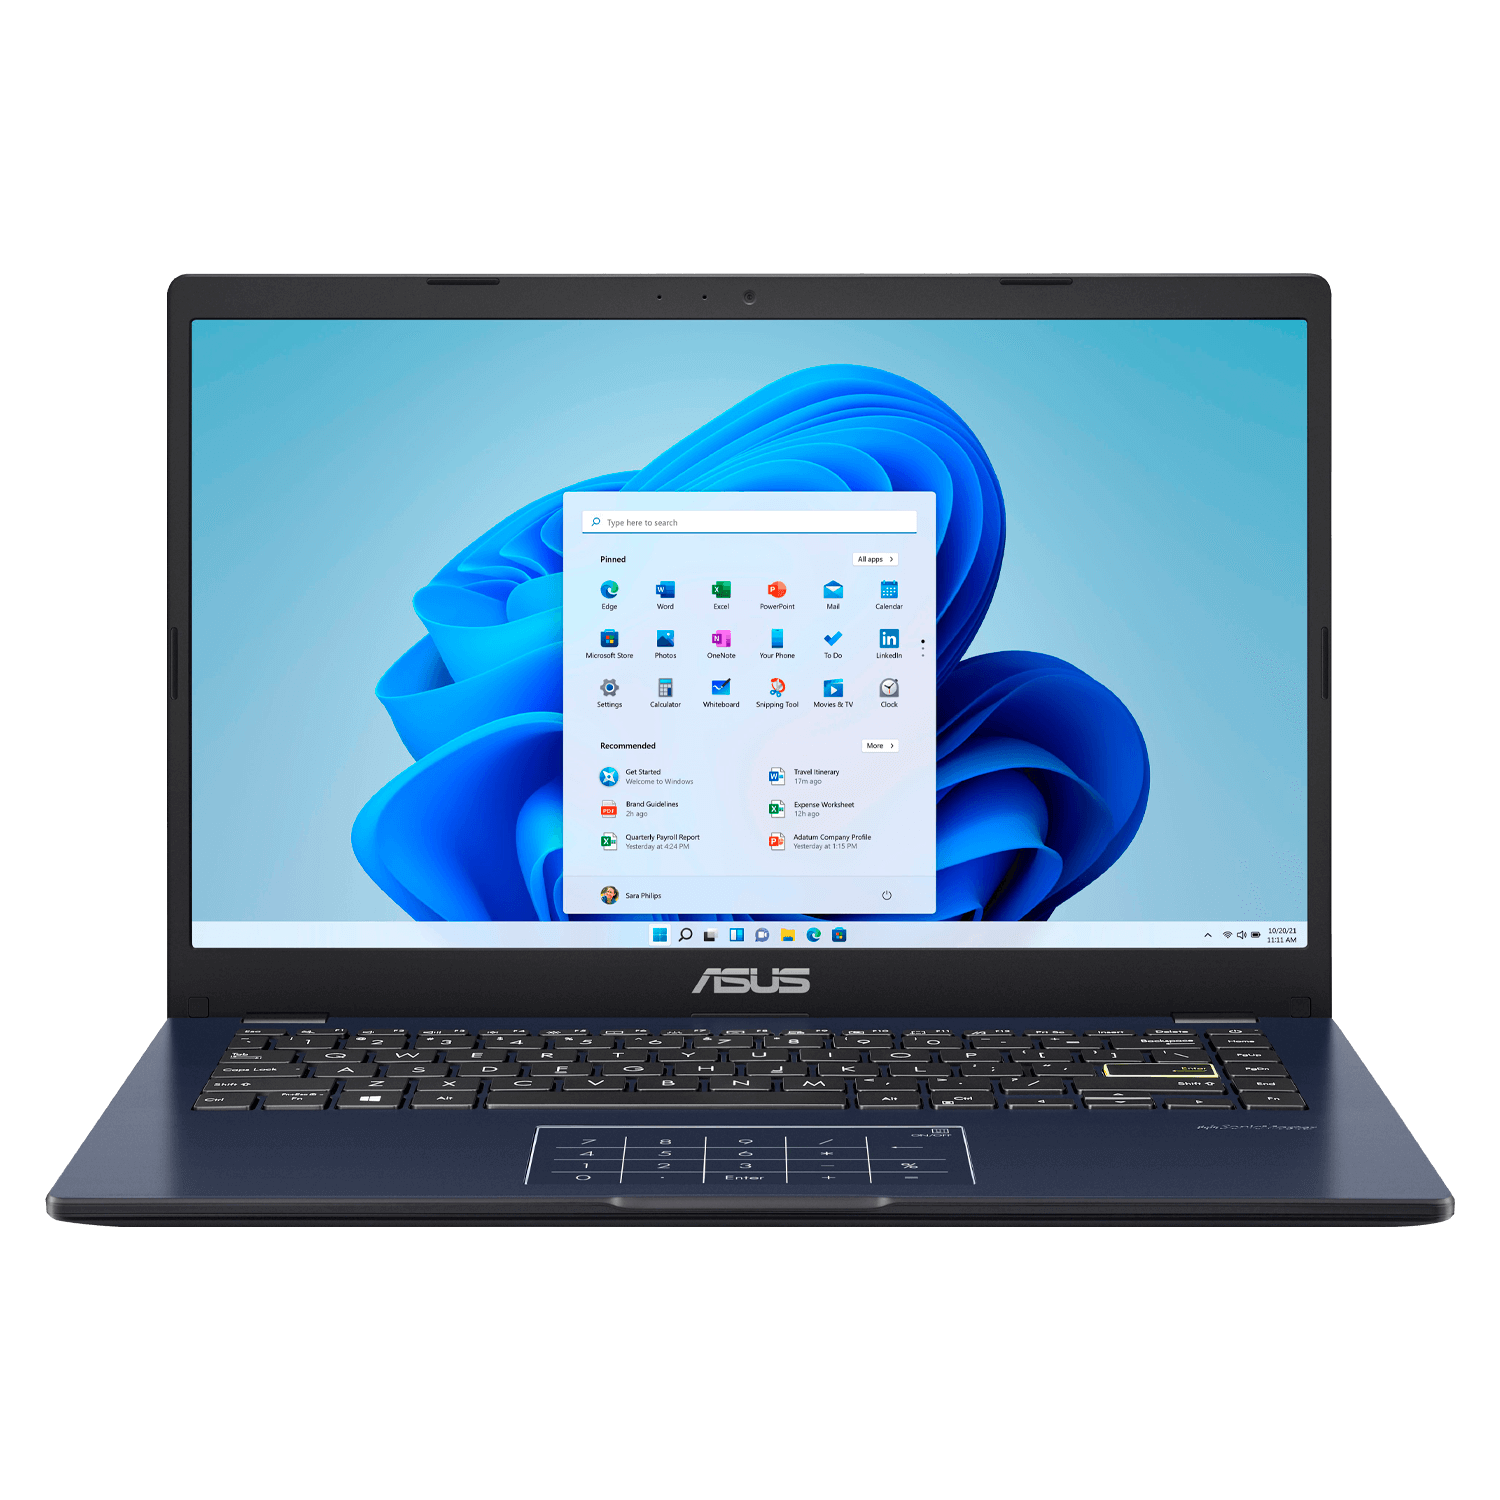 Notebook Asus R410MA-212-BK128 Intel Celeron N4020 4GB / 128GB / Windows 10